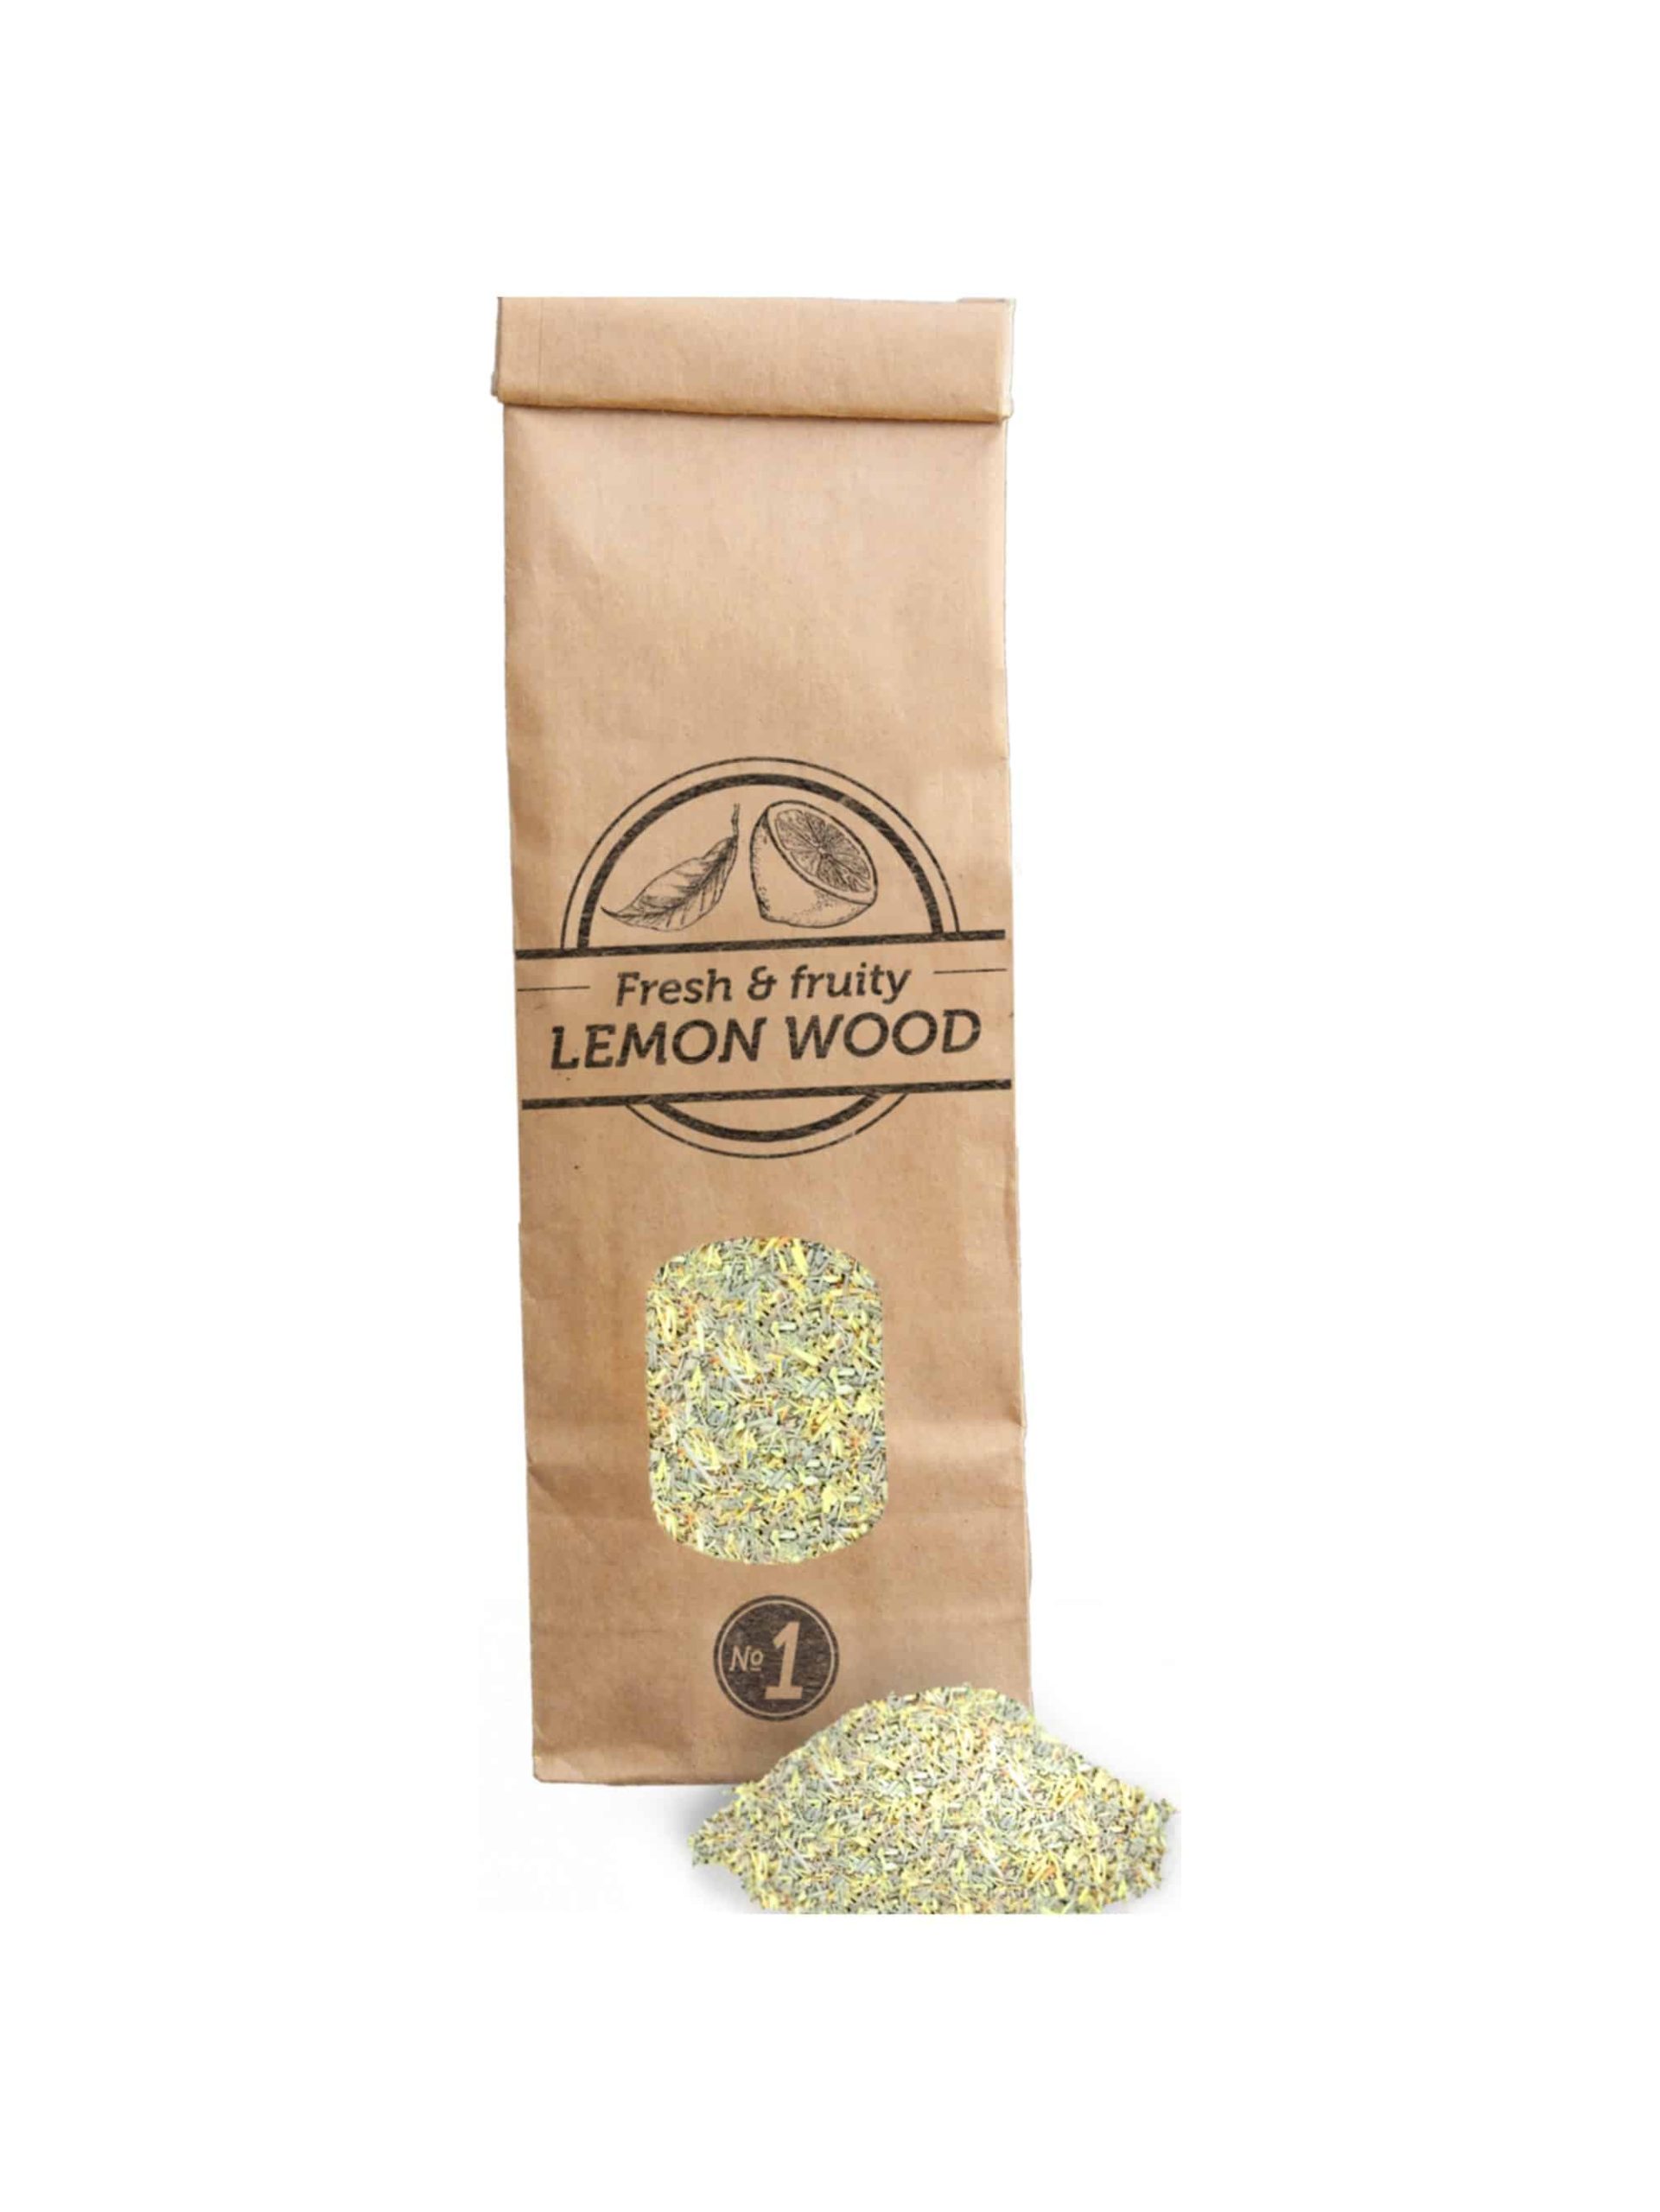 SOW Polvere di legno di Limone per affumicatura Nº1